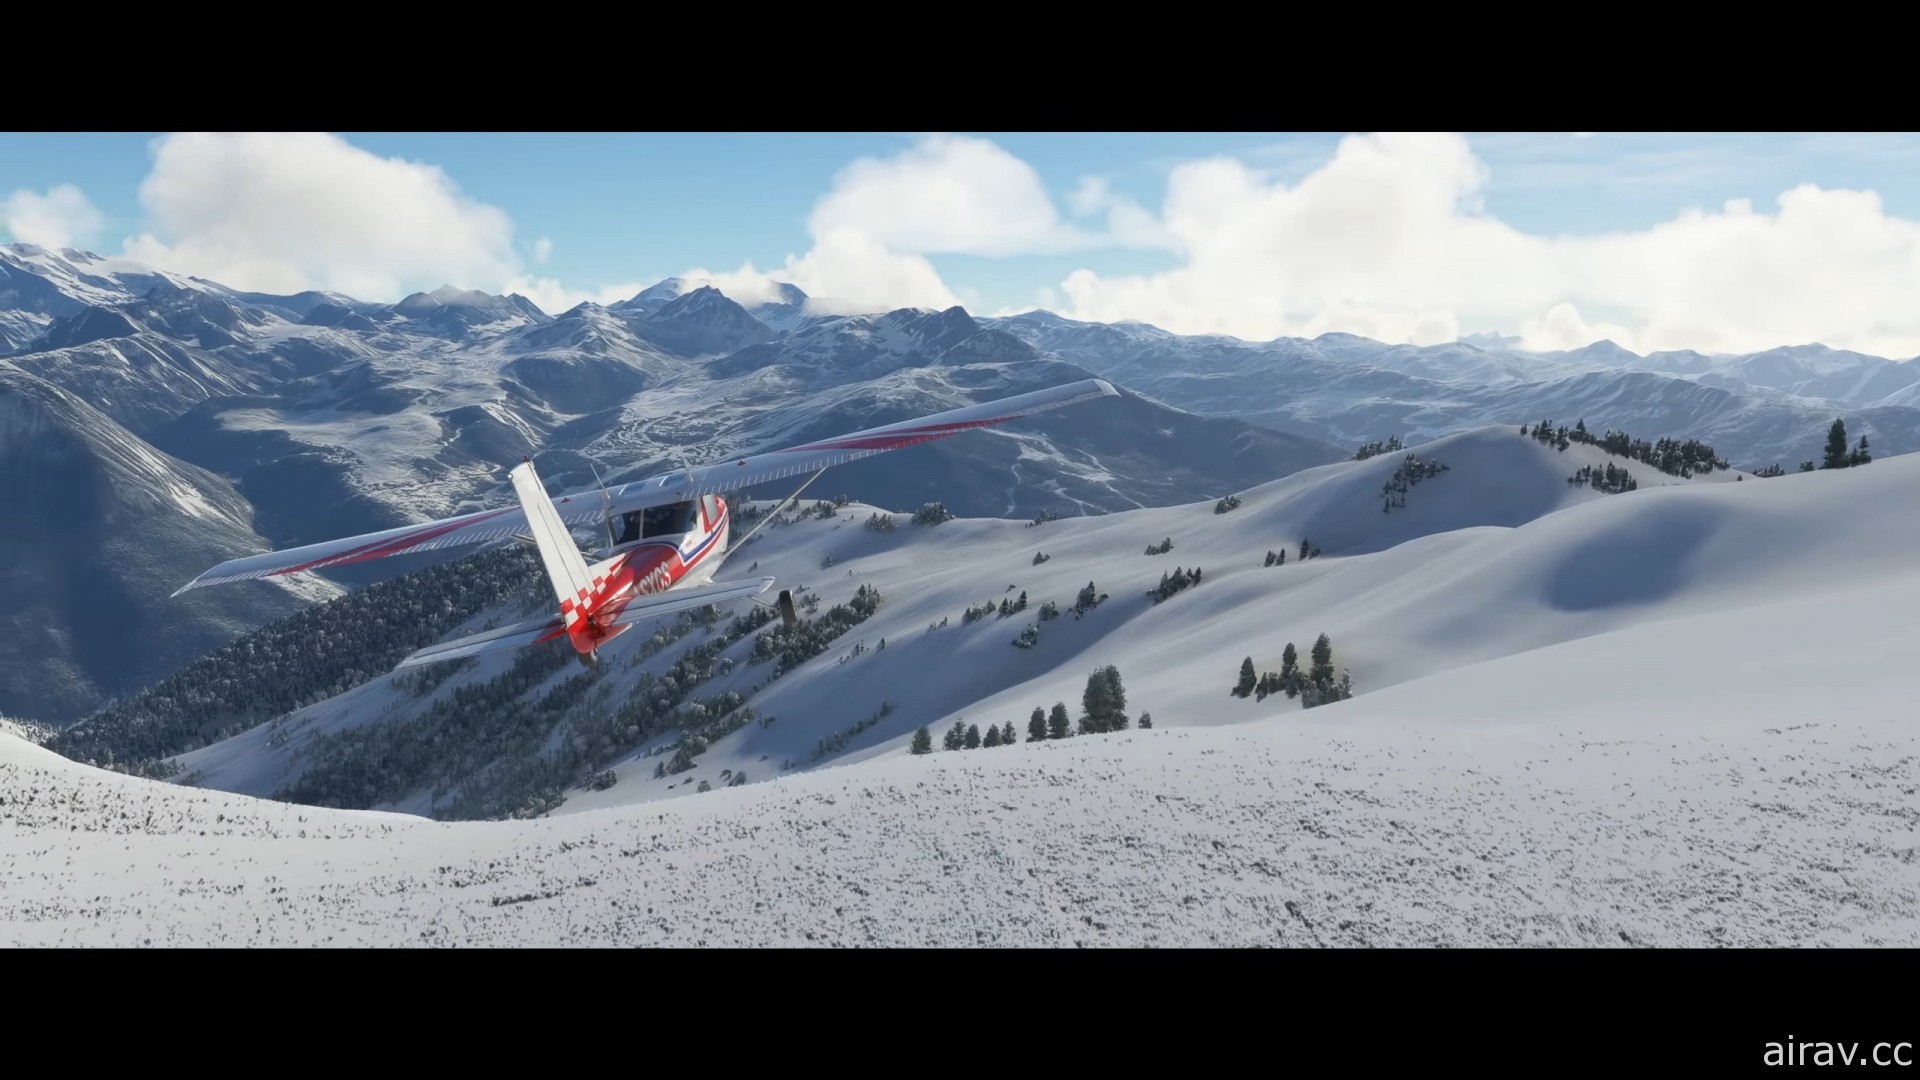 《微軟模擬飛行》釋出新宣傳影片 從空中一覽大雪覆蓋景色